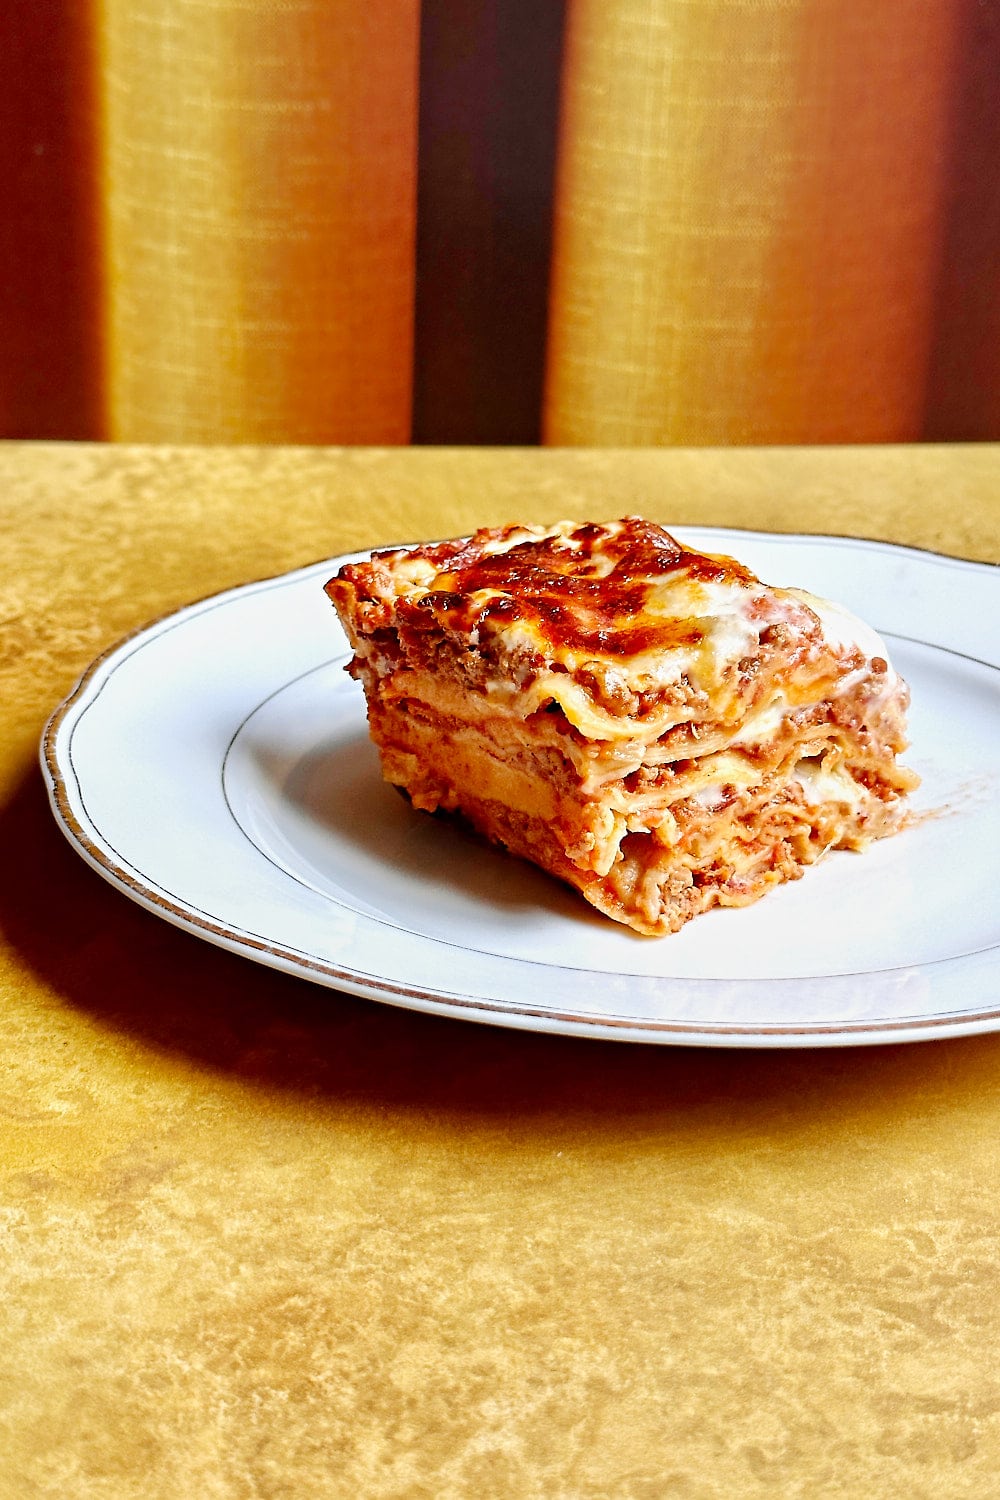 classic lasagna al forno on a white plate.